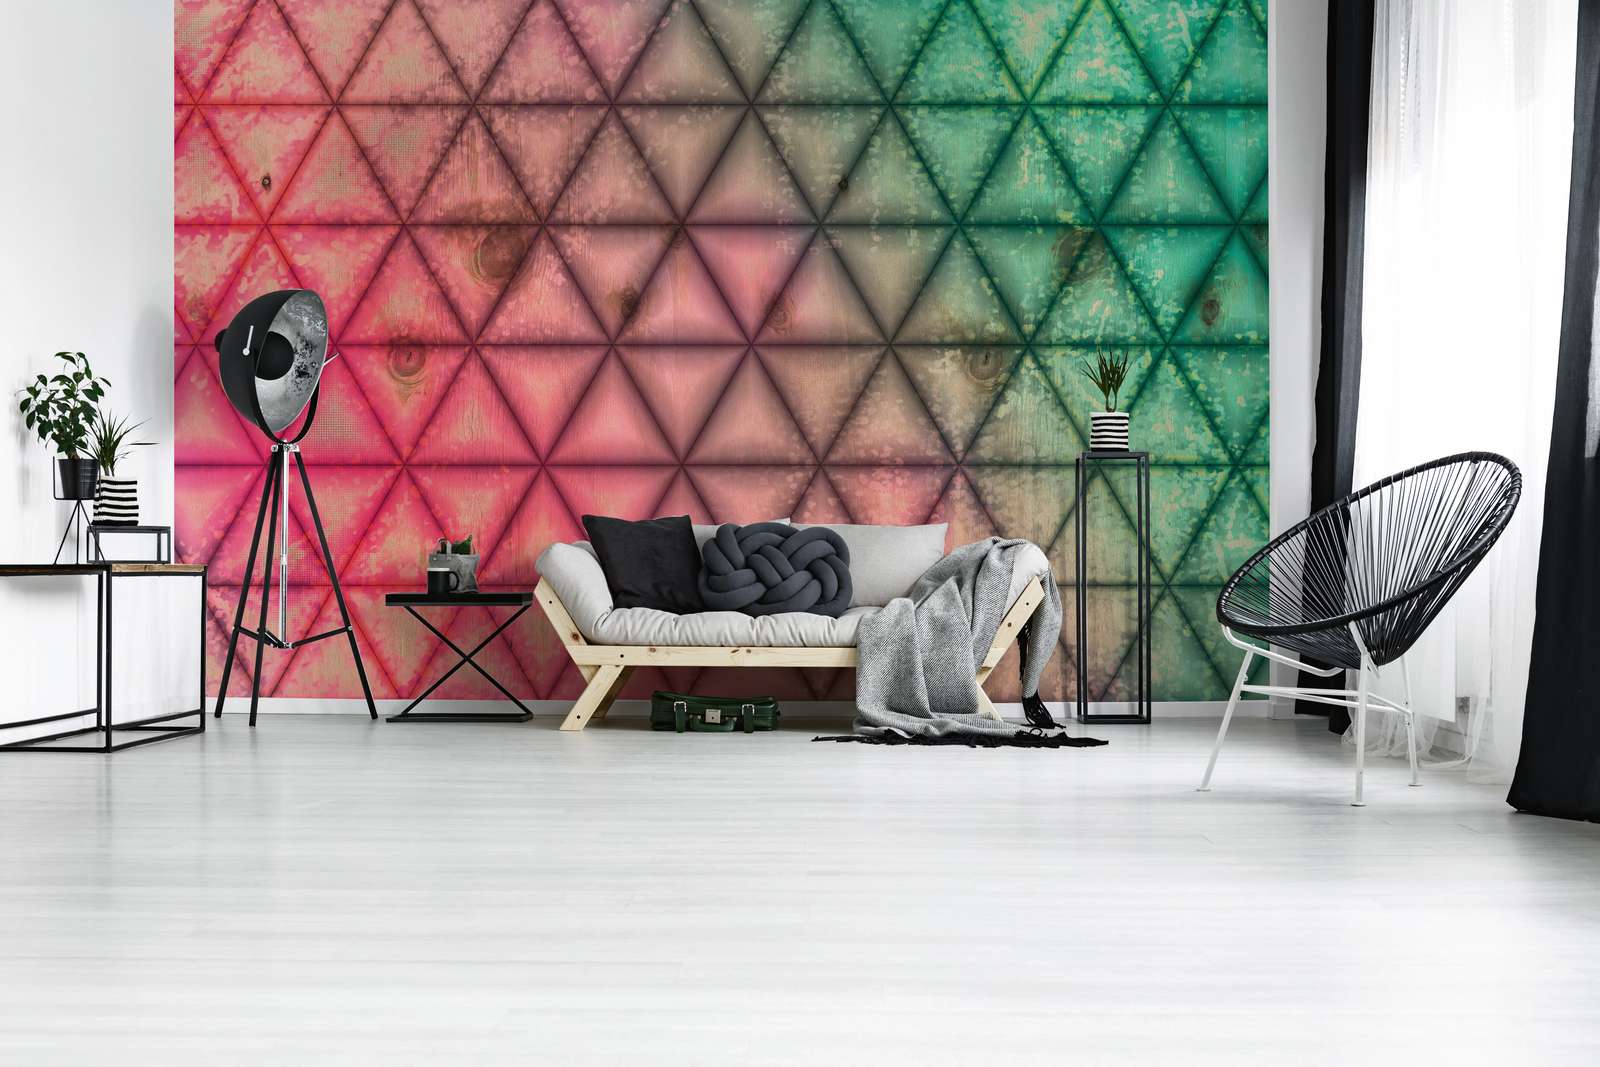             Mural de pared con diseño geométrico de triángulos con aspecto de madera - verde, rosa
        